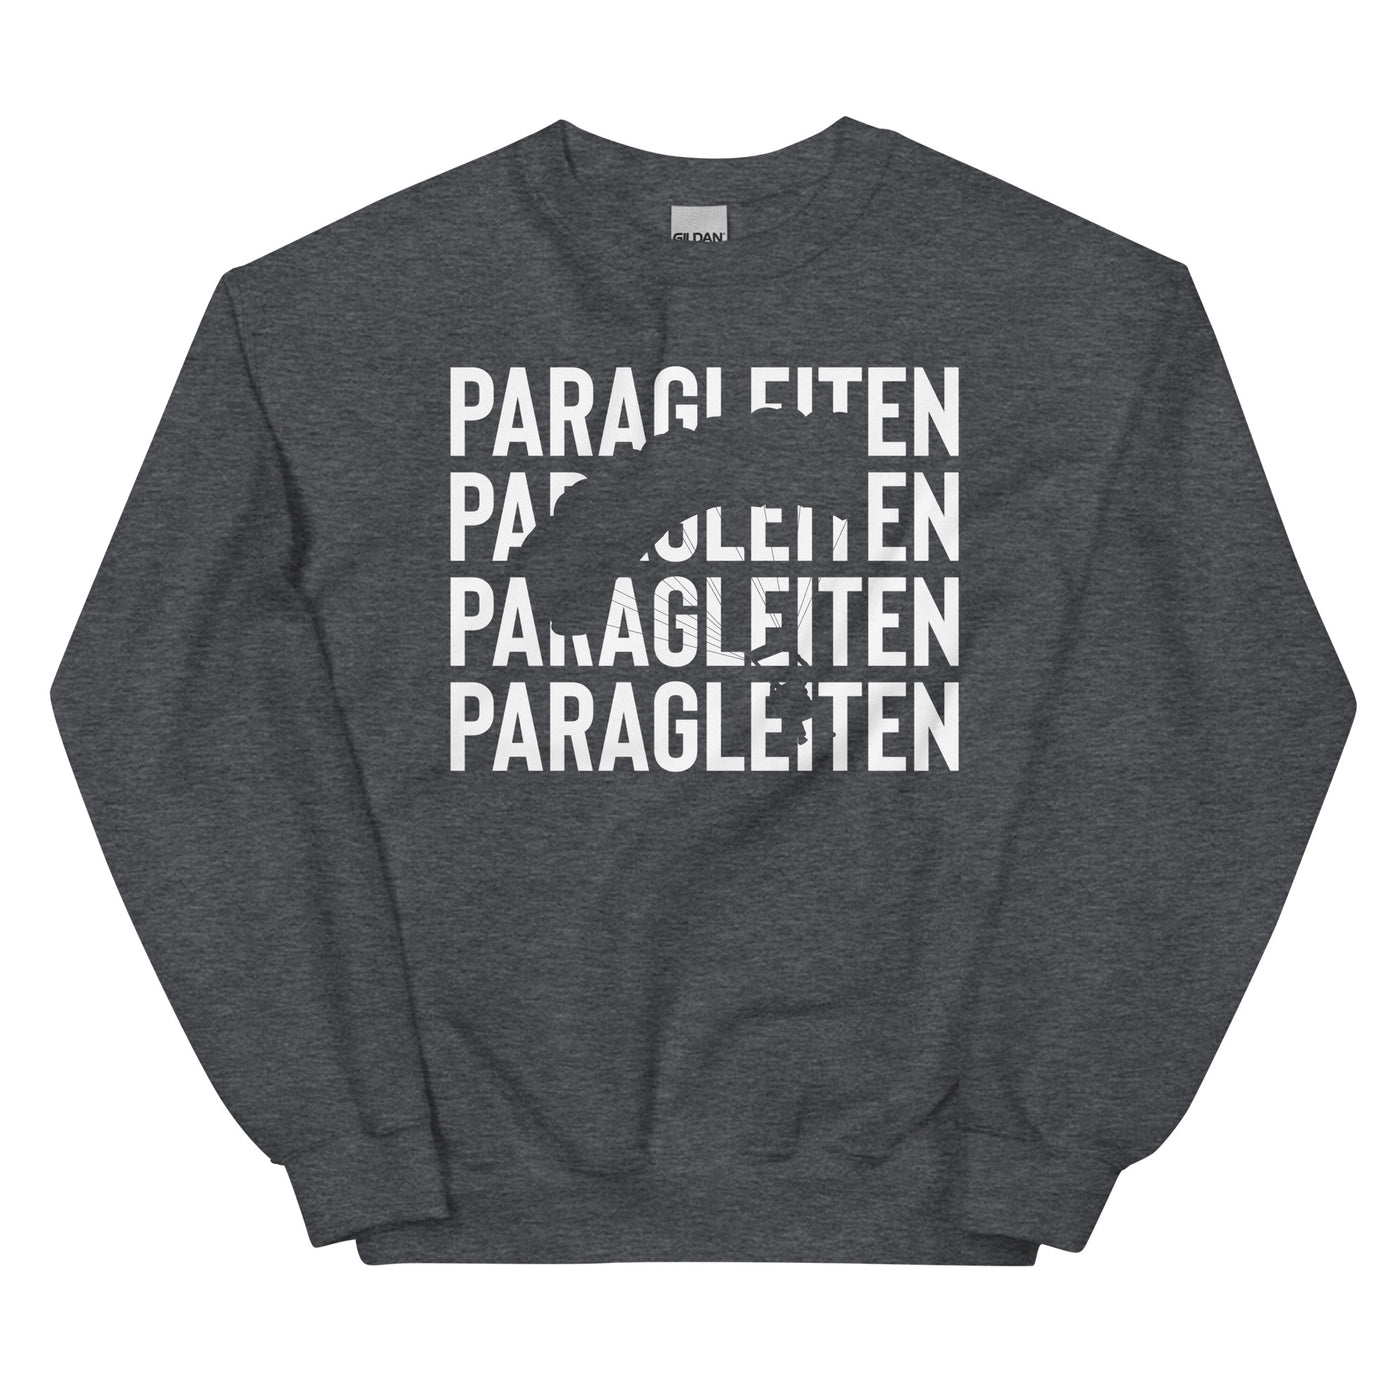 Paragleiten - Sweatshirt (Unisex) berge xxx yyy zzz Dark Heather